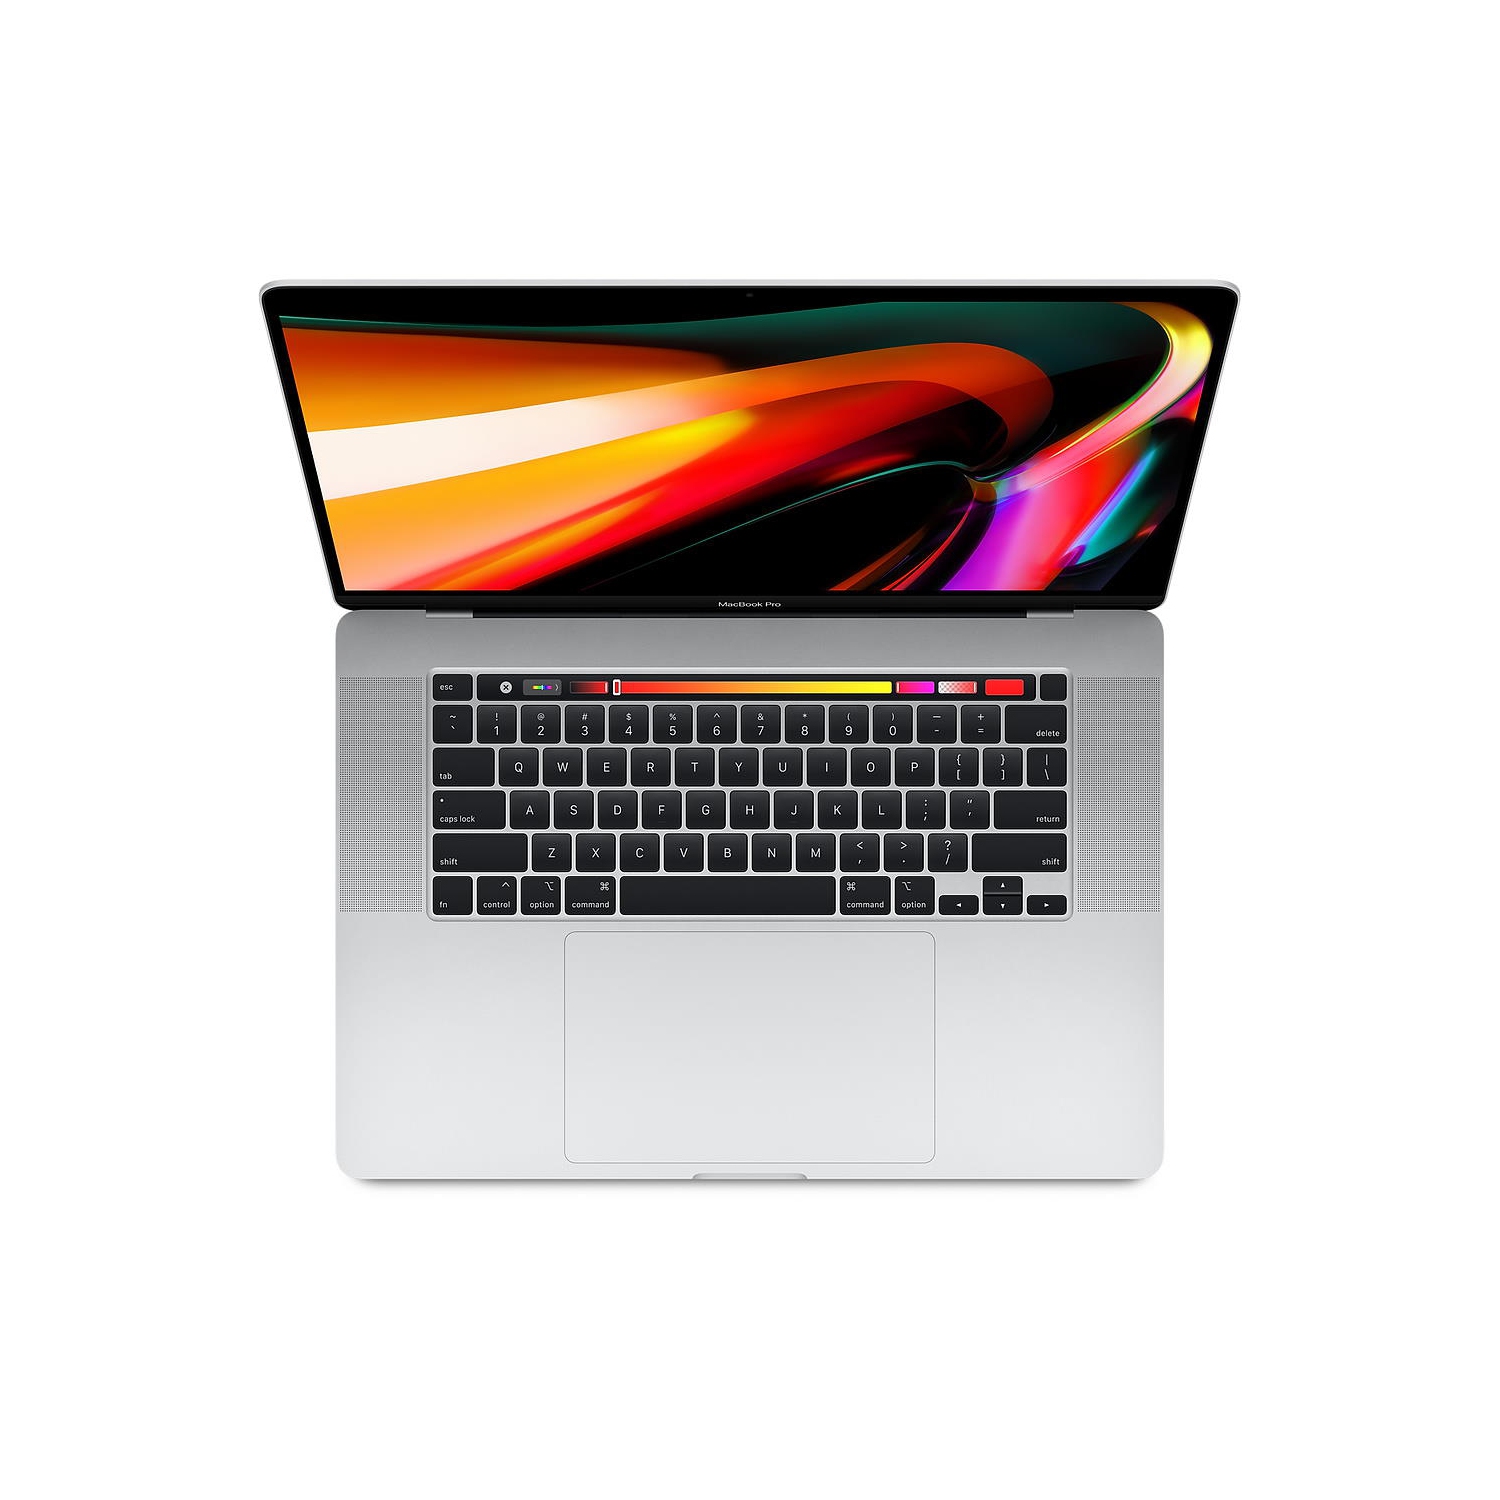 Refurbished - Good) Macbook Pro 16-inch (Silver, 1yr Warranty) 2.6 